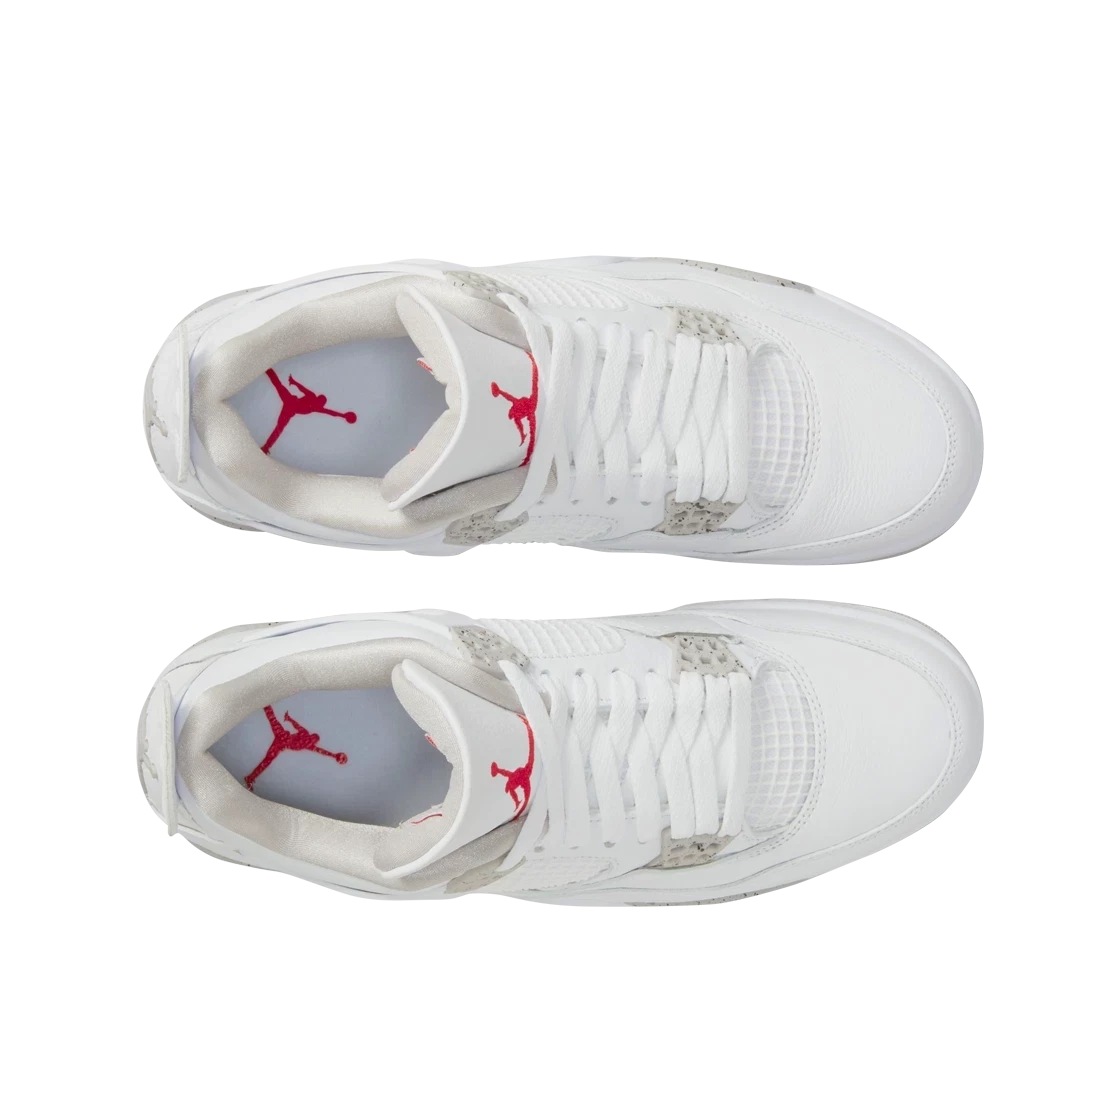 Air Jordan 4 Retro White Oreo 2021